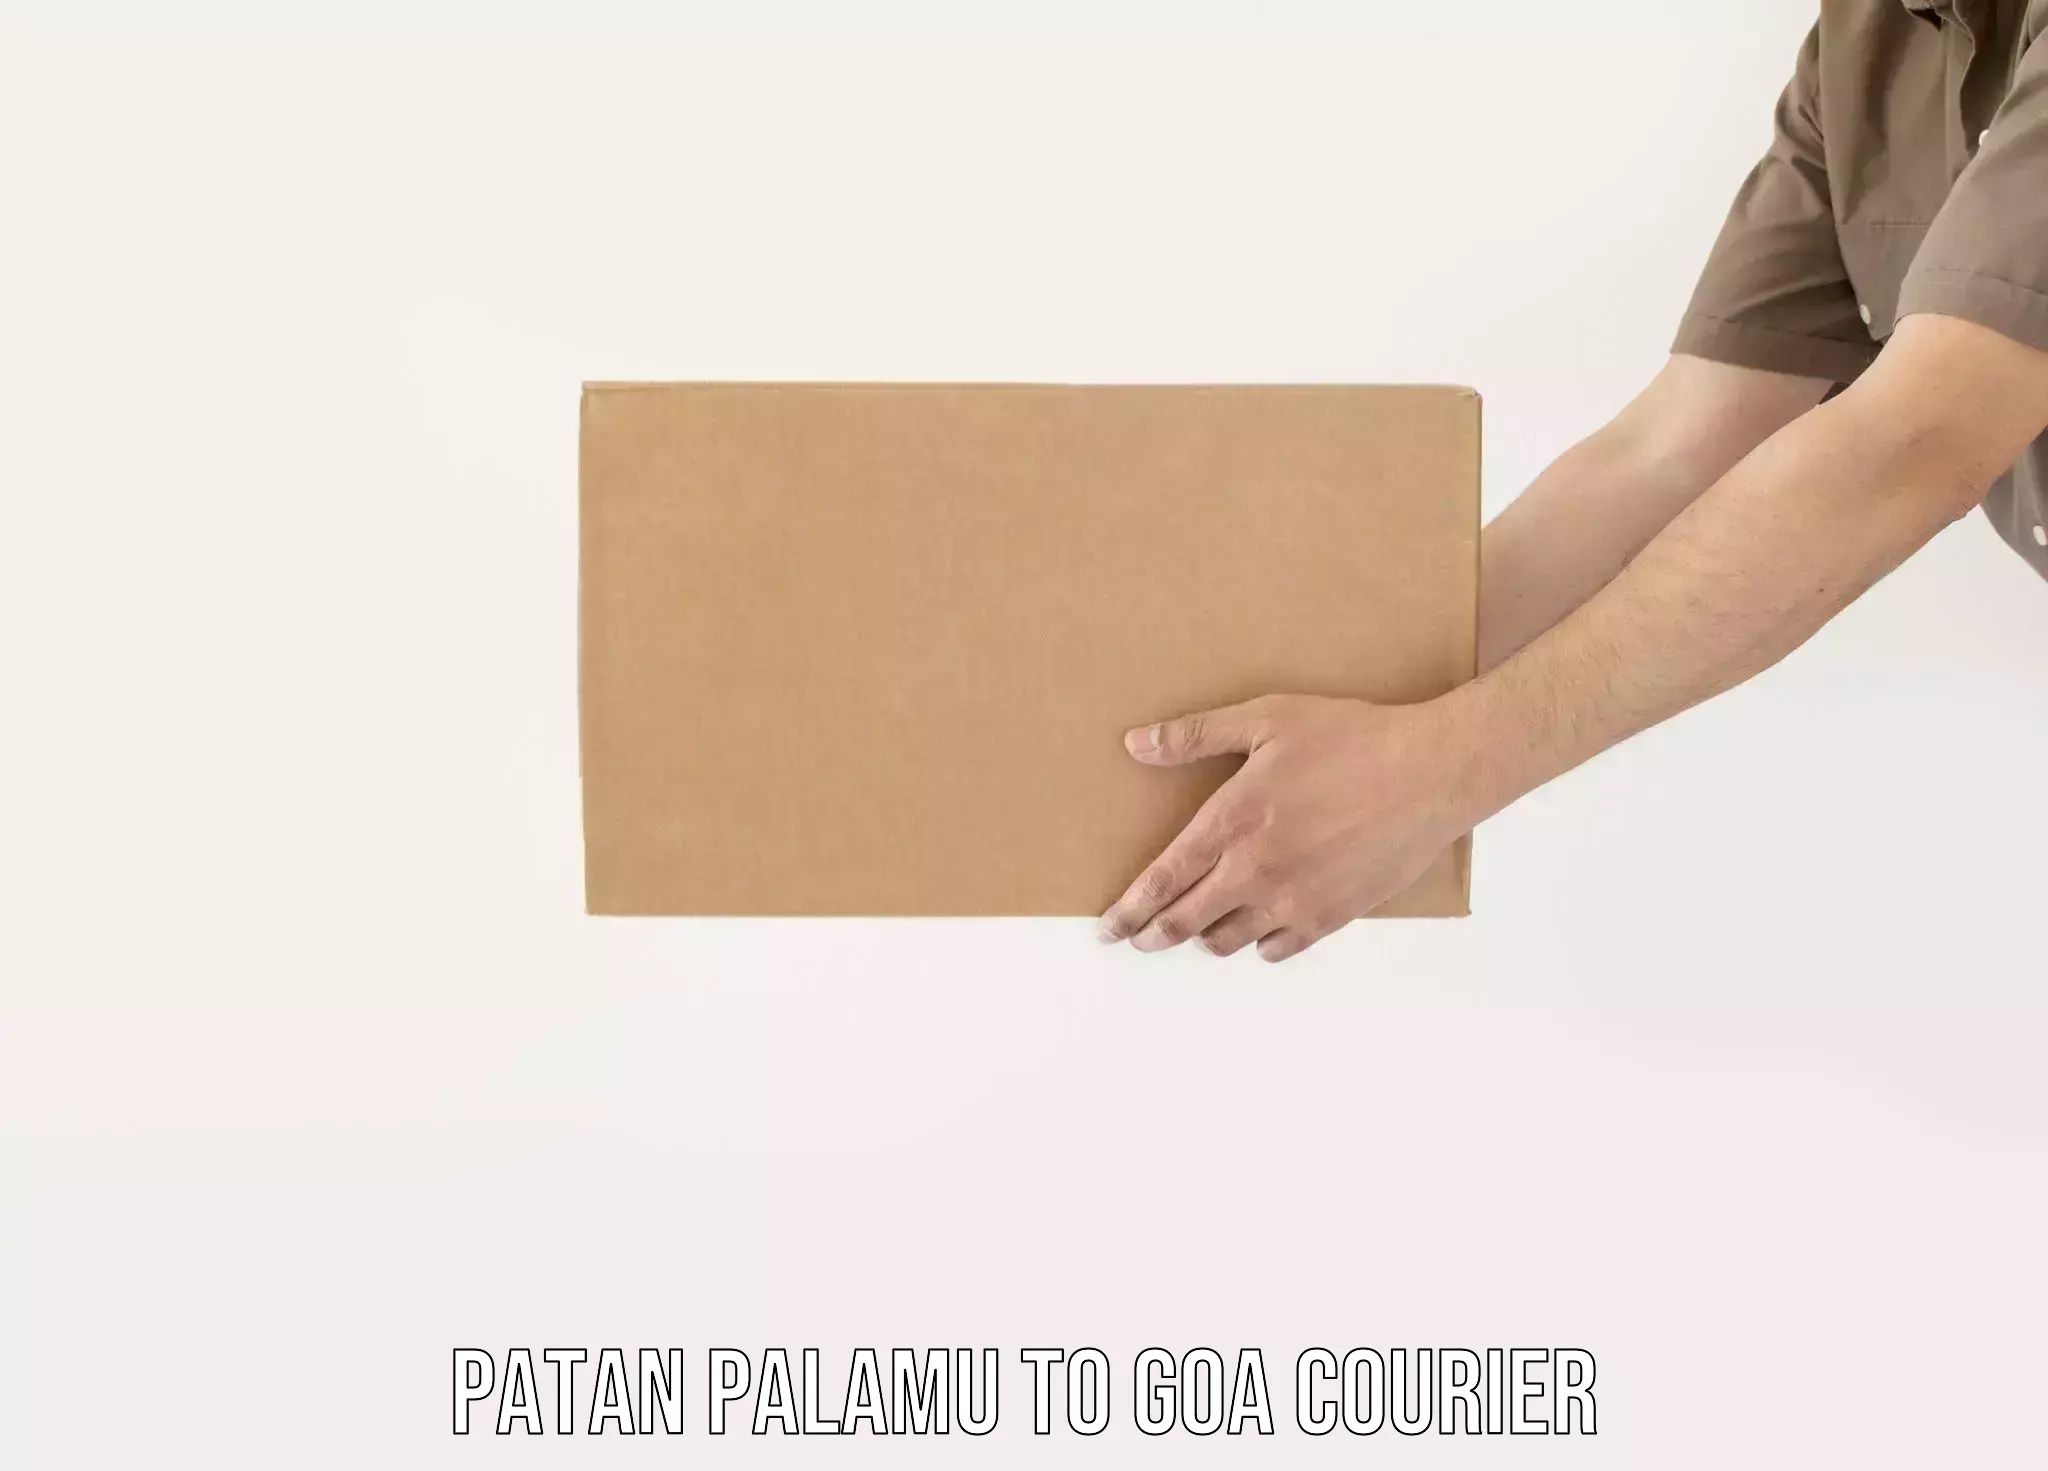 State-of-the-art courier technology Patan Palamu to Goa University